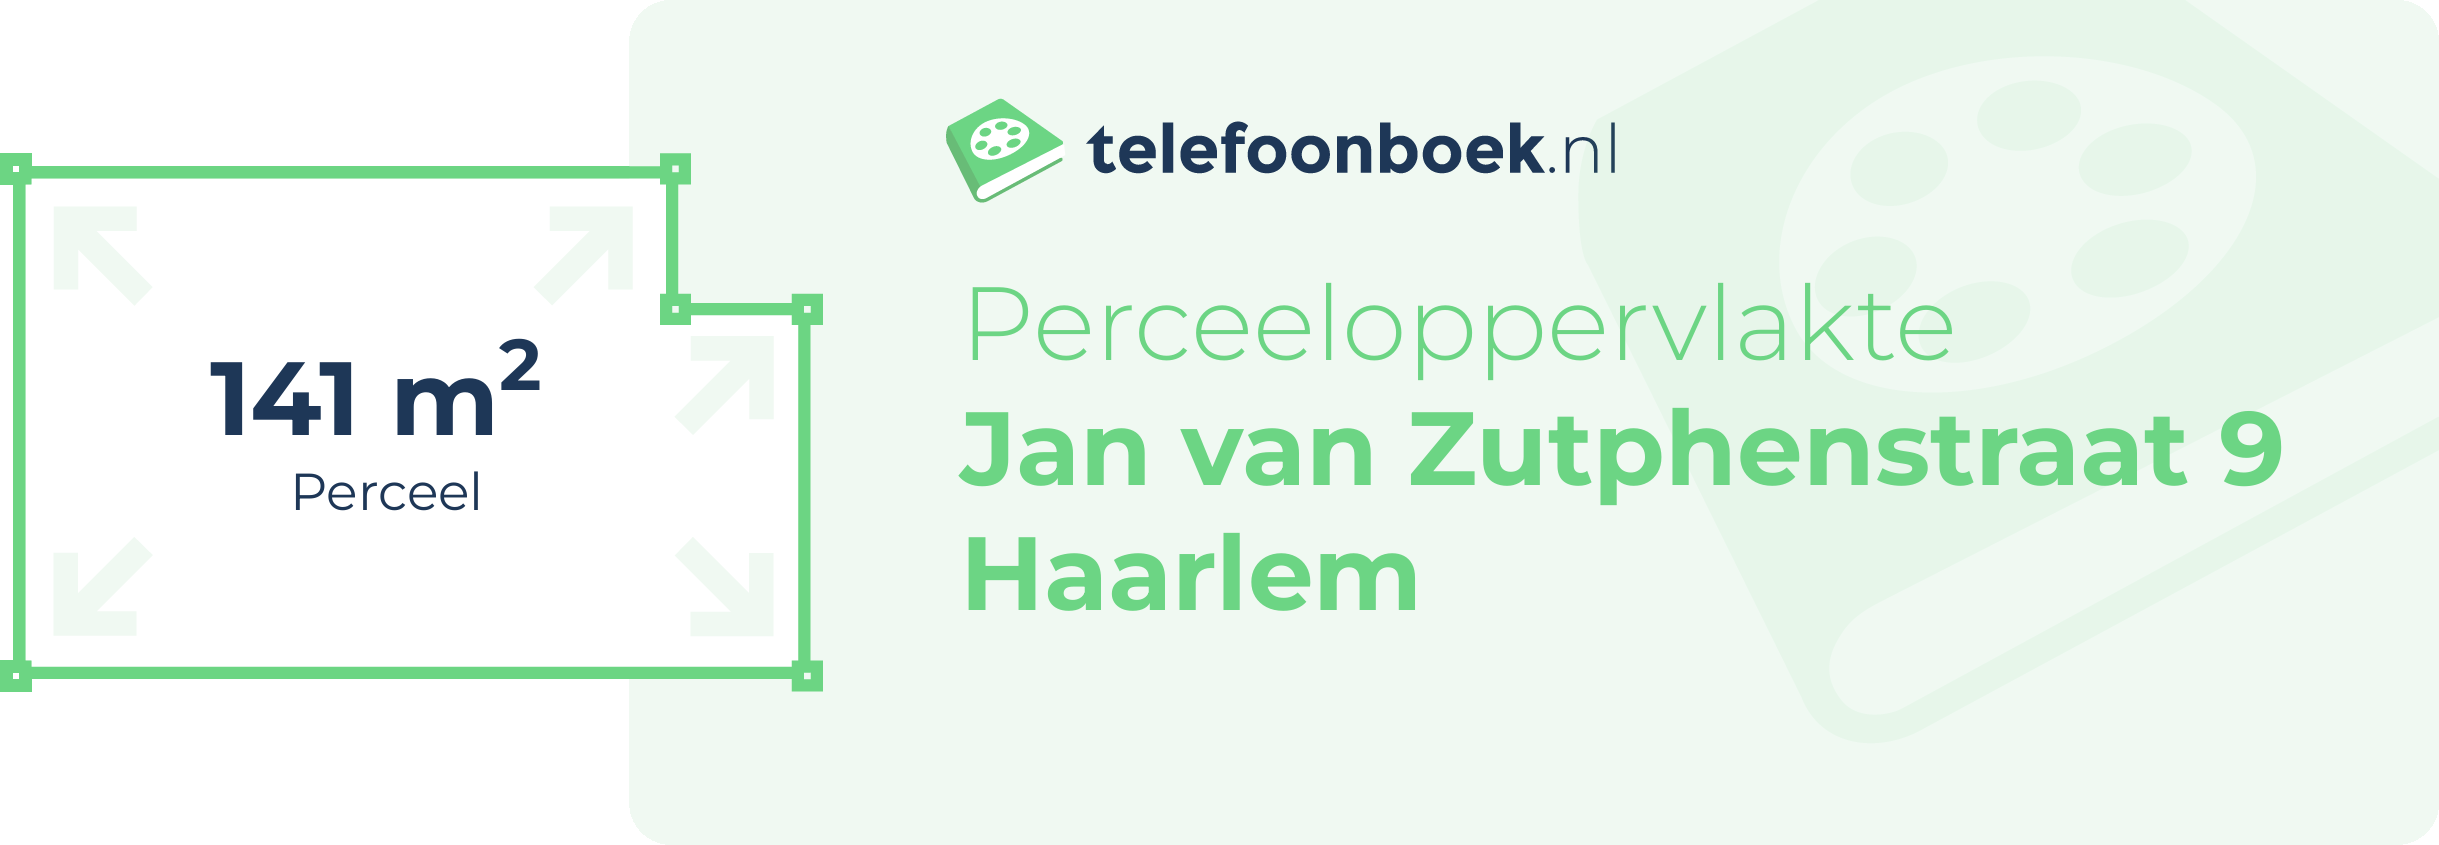 Perceeloppervlakte Jan Van Zutphenstraat 9 Haarlem